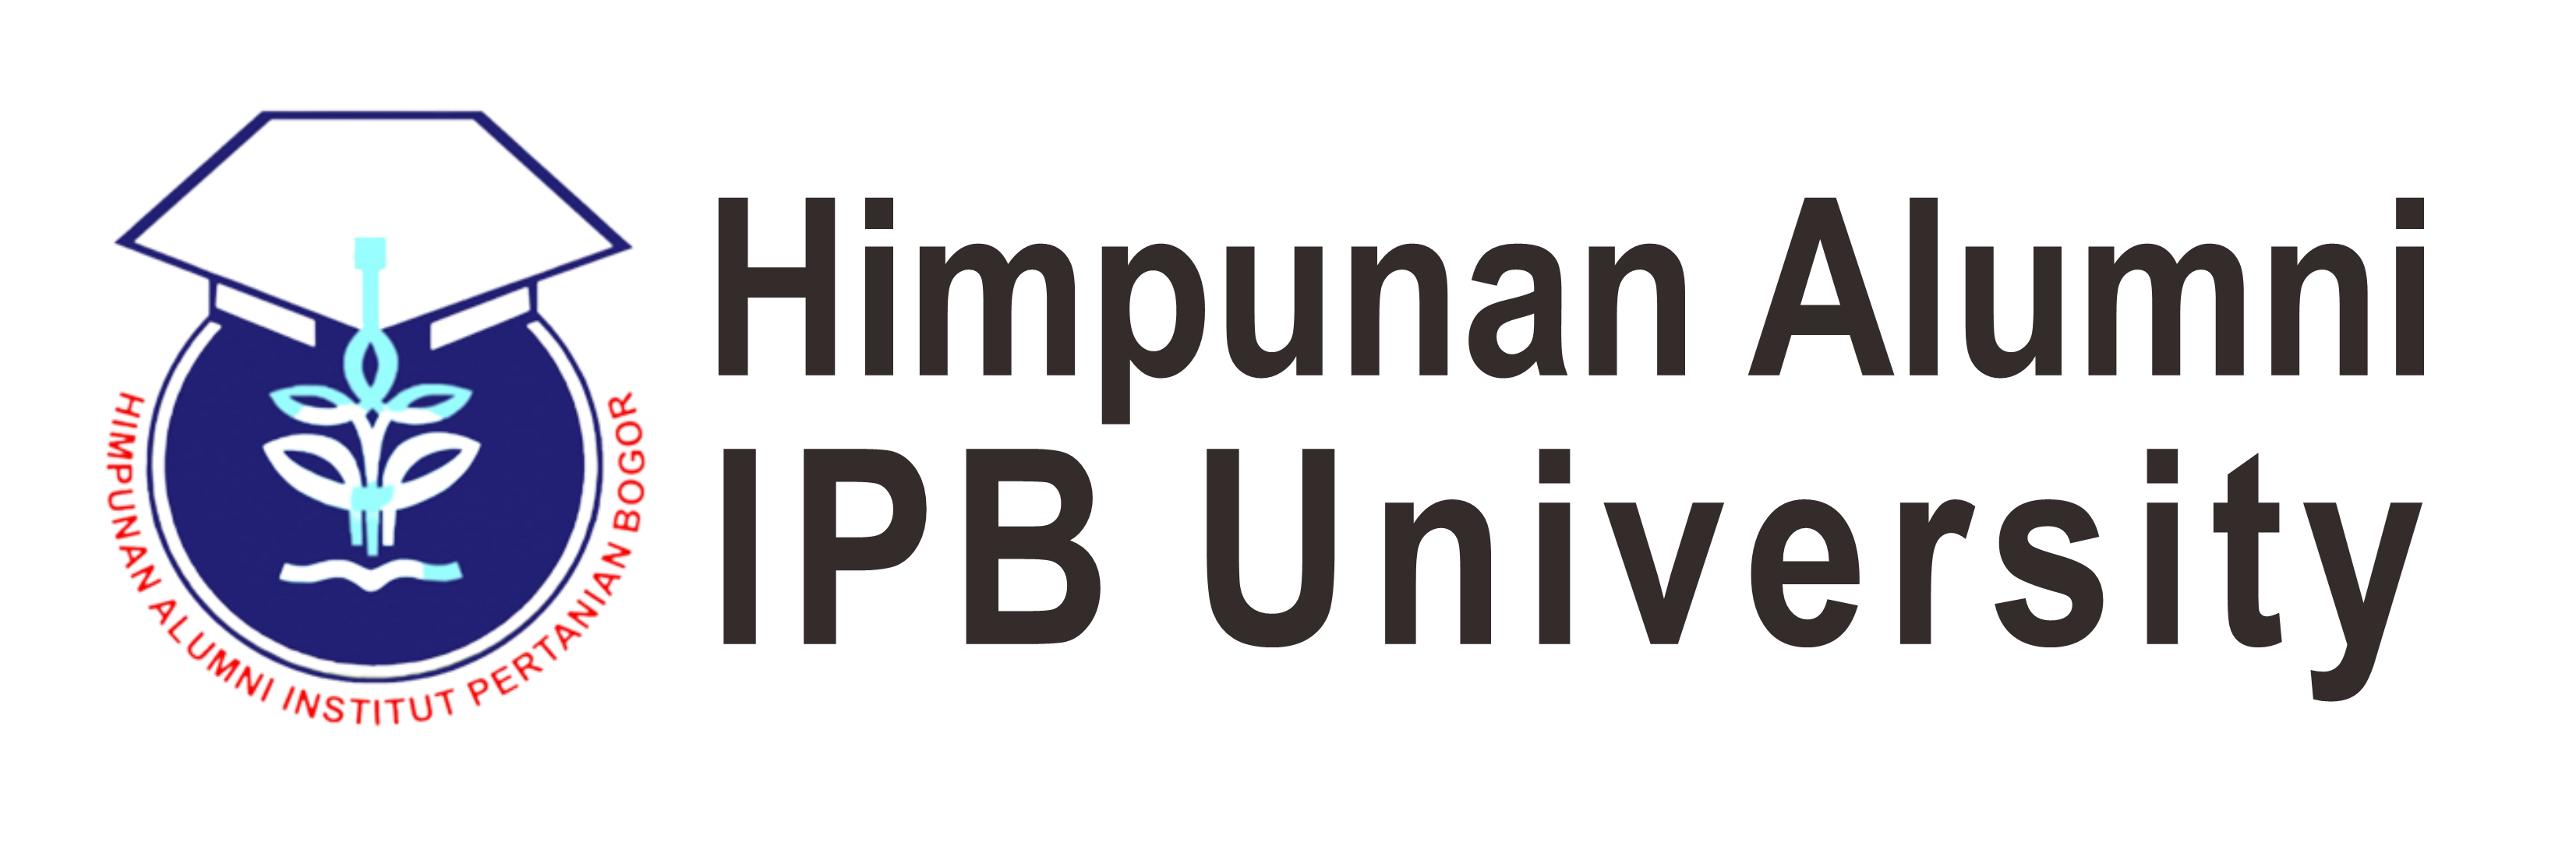 Himpunan Alumni IPB